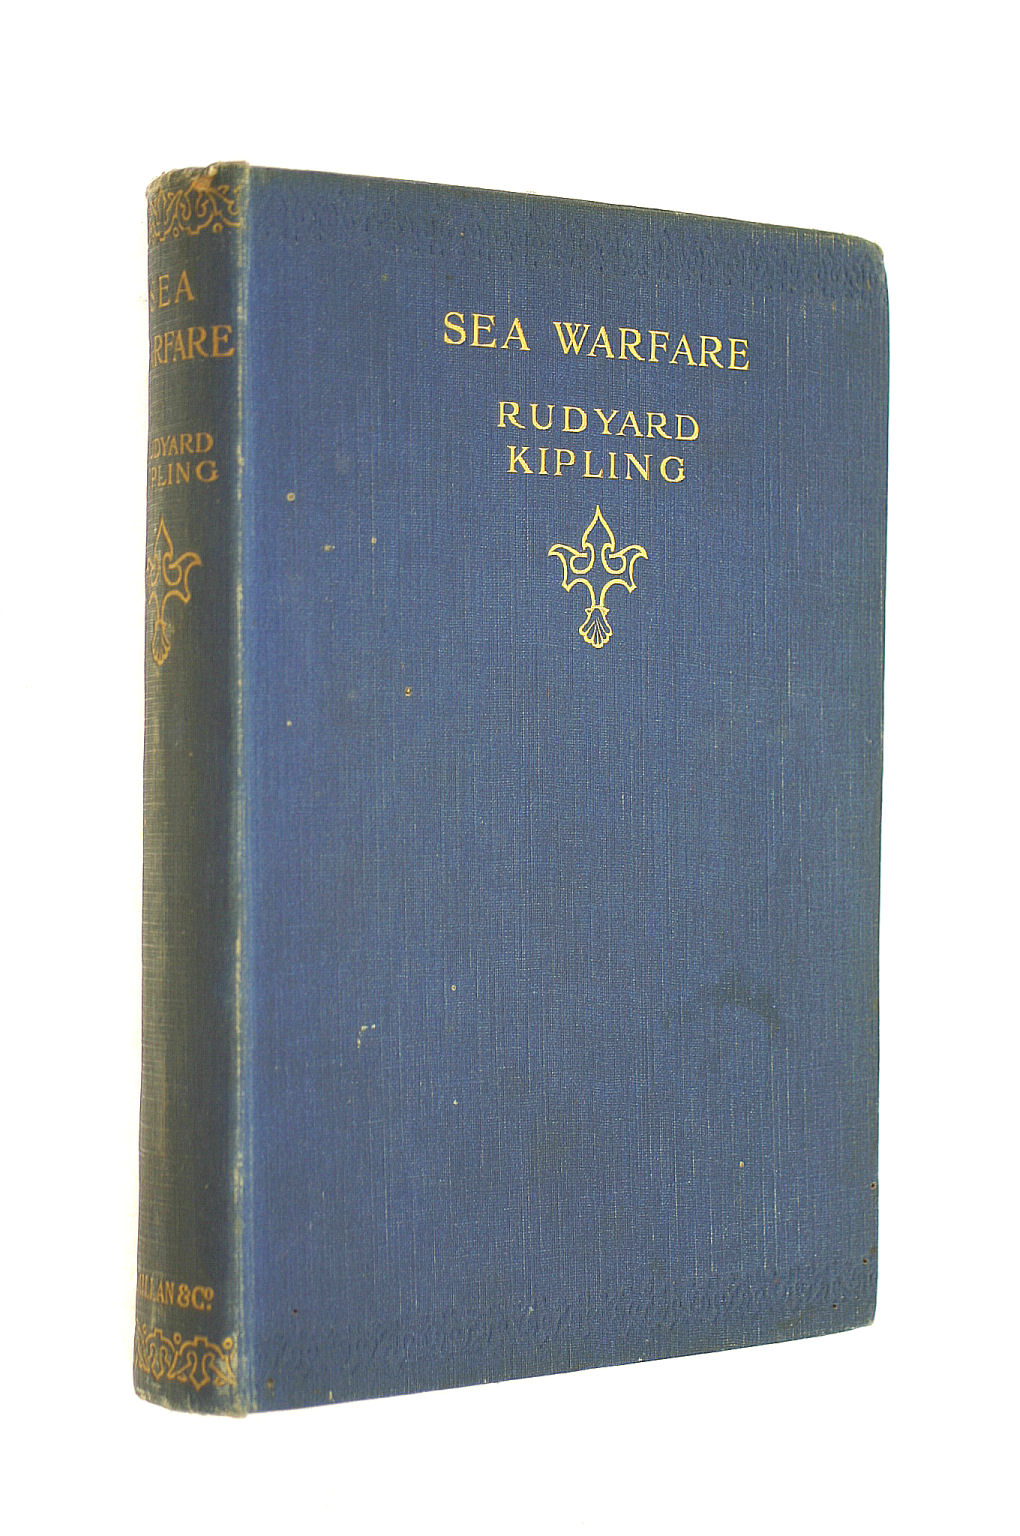 KIPLING, RUDYARD - Sea Warfare